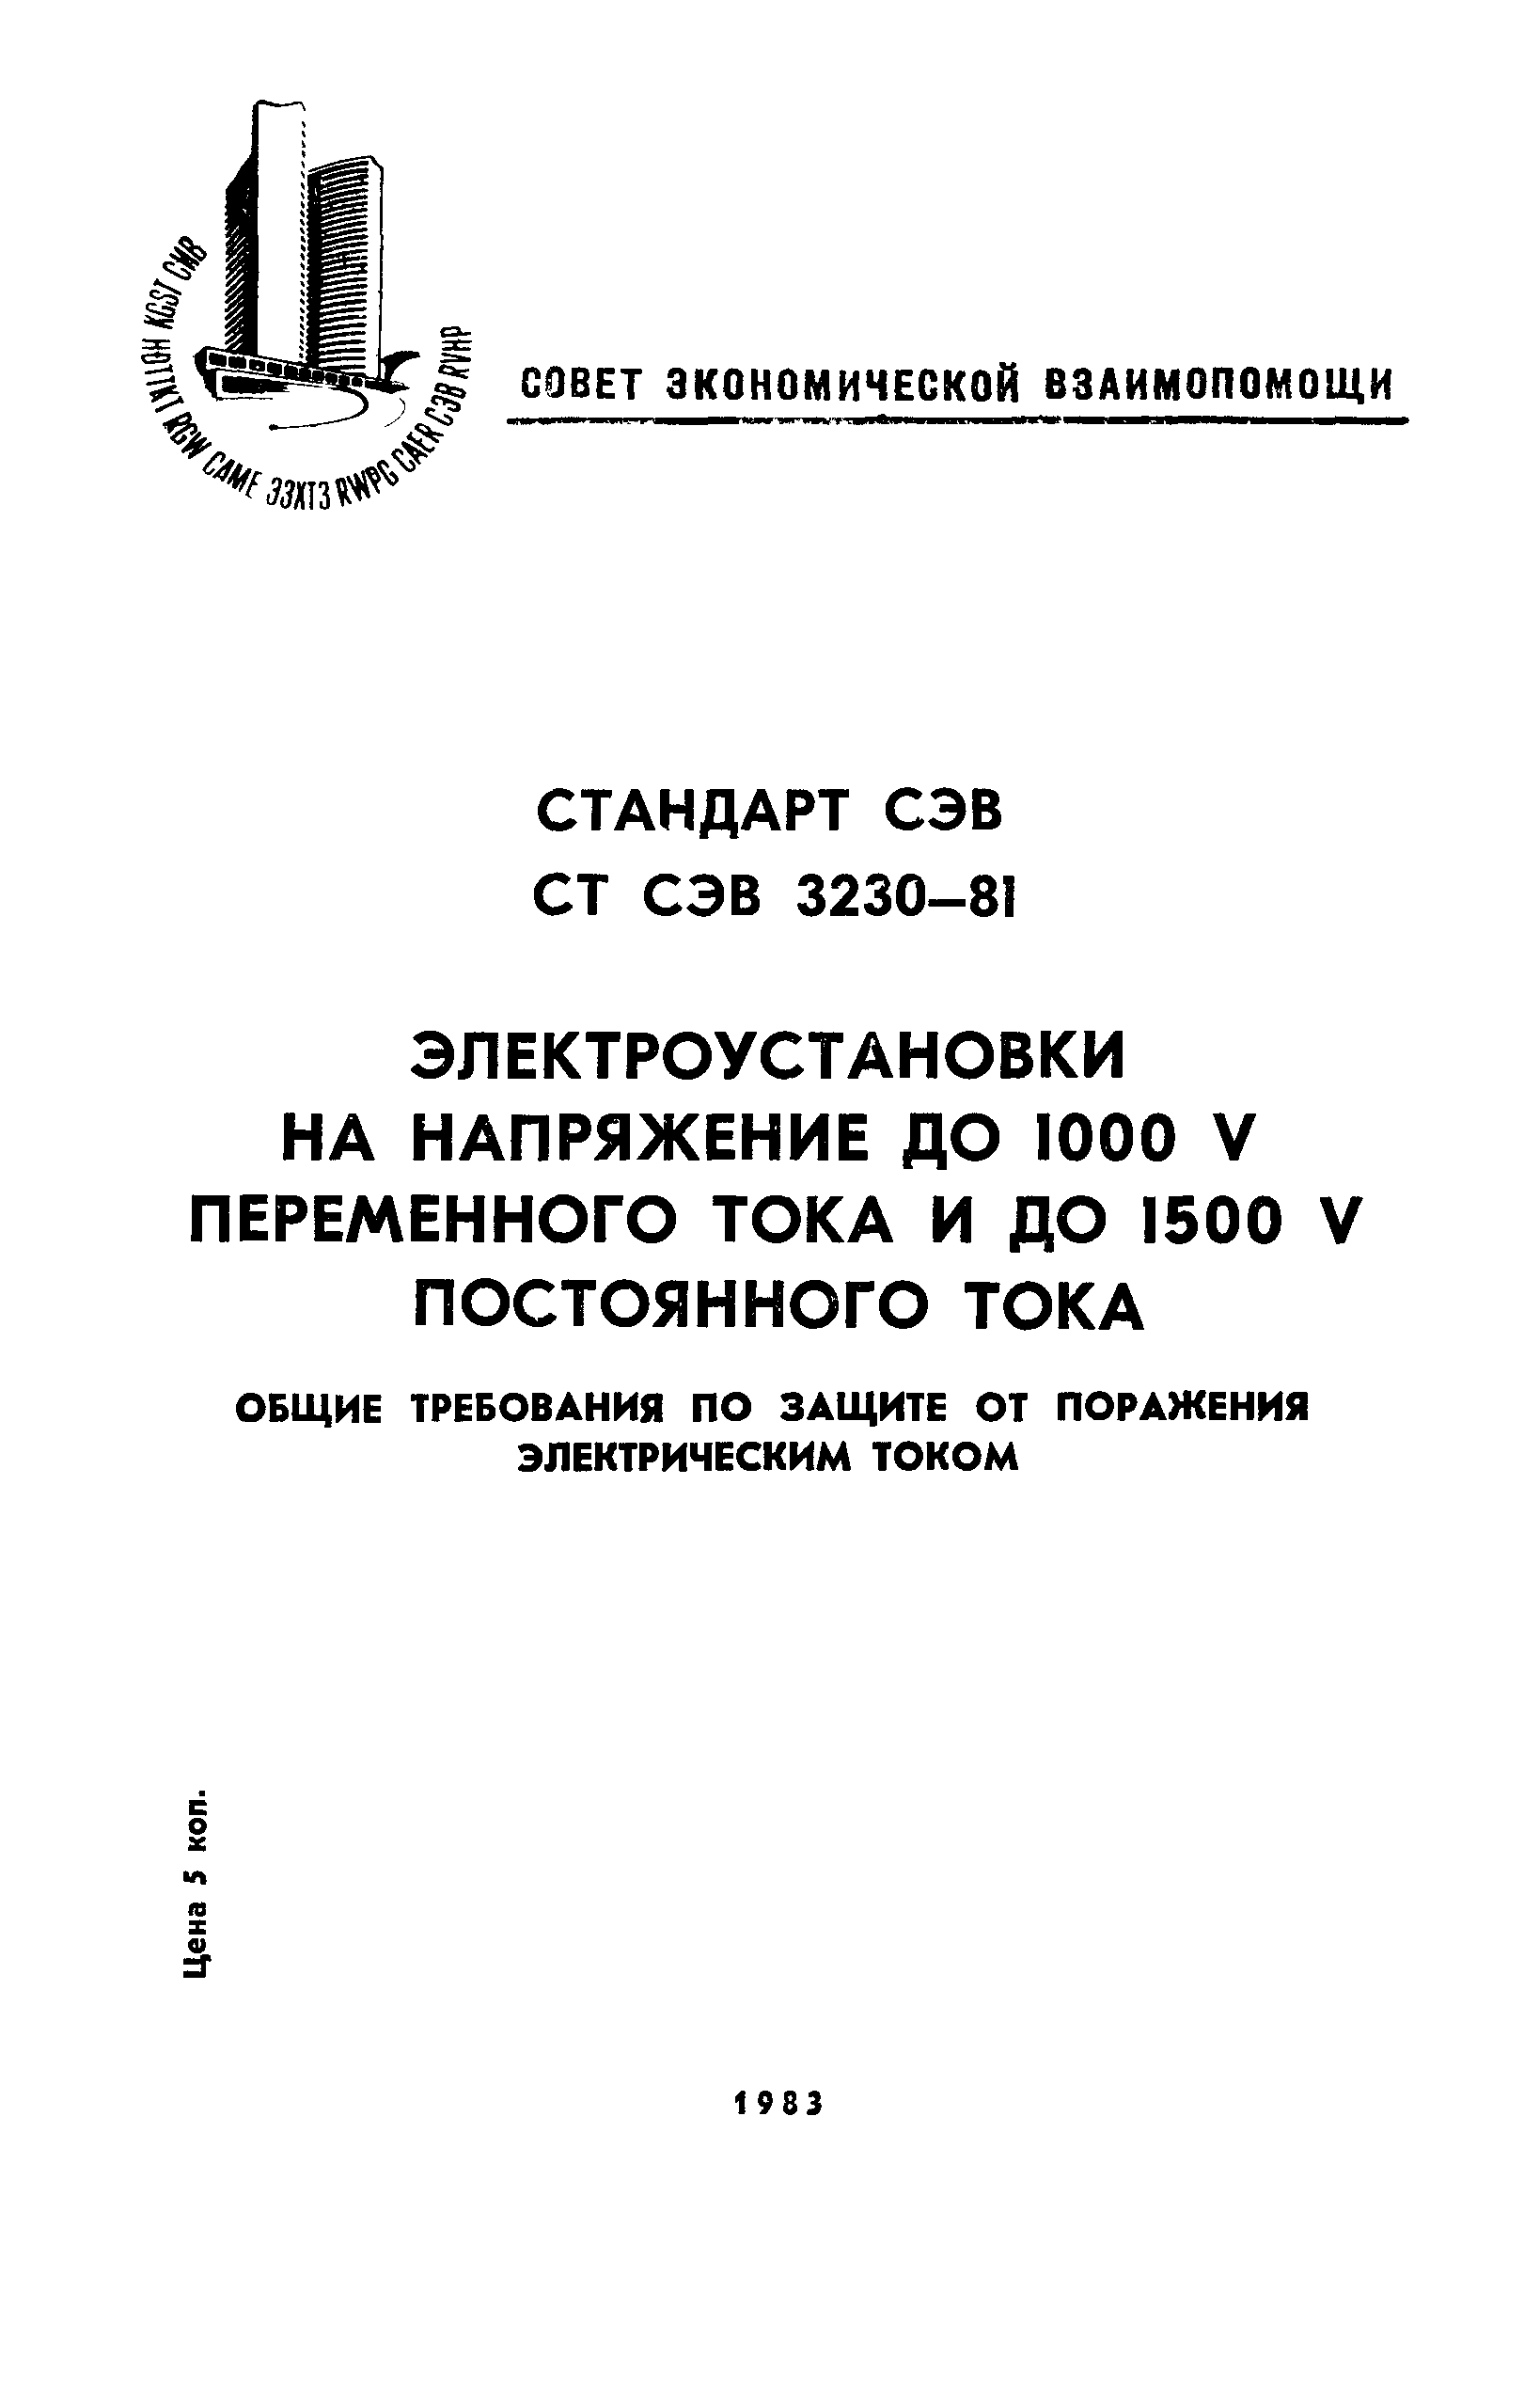 СТ СЭВ 3230-81